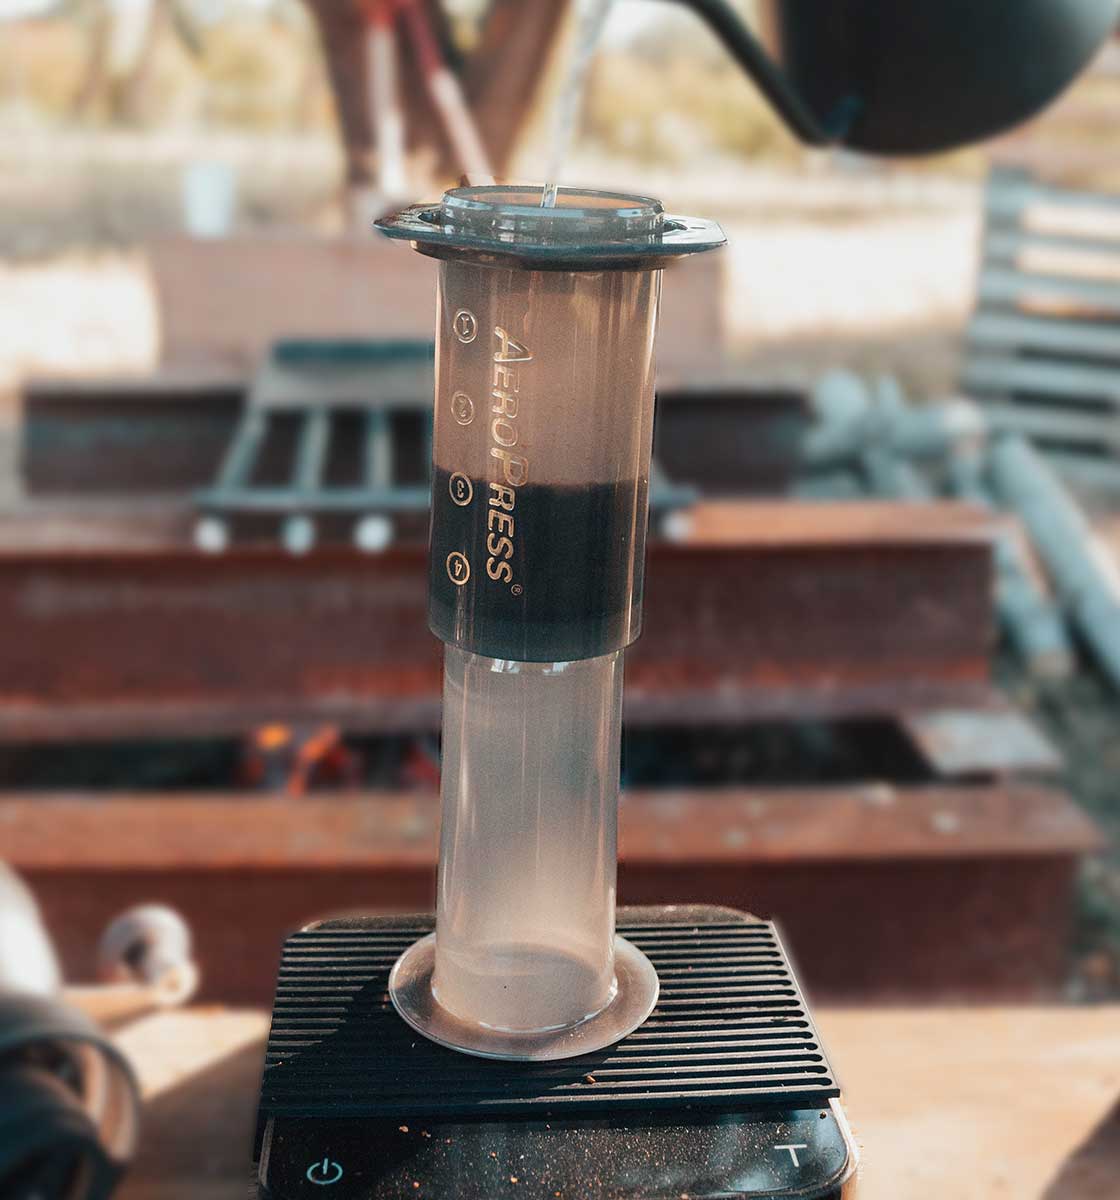 Açık havada hassas tartı üzerinde yer alan Aeropress filtre kahve demleme ekipmanına bariste kettle ile sıcak su doldurularak gerçekleştirilen fitre kahve demlemesi.